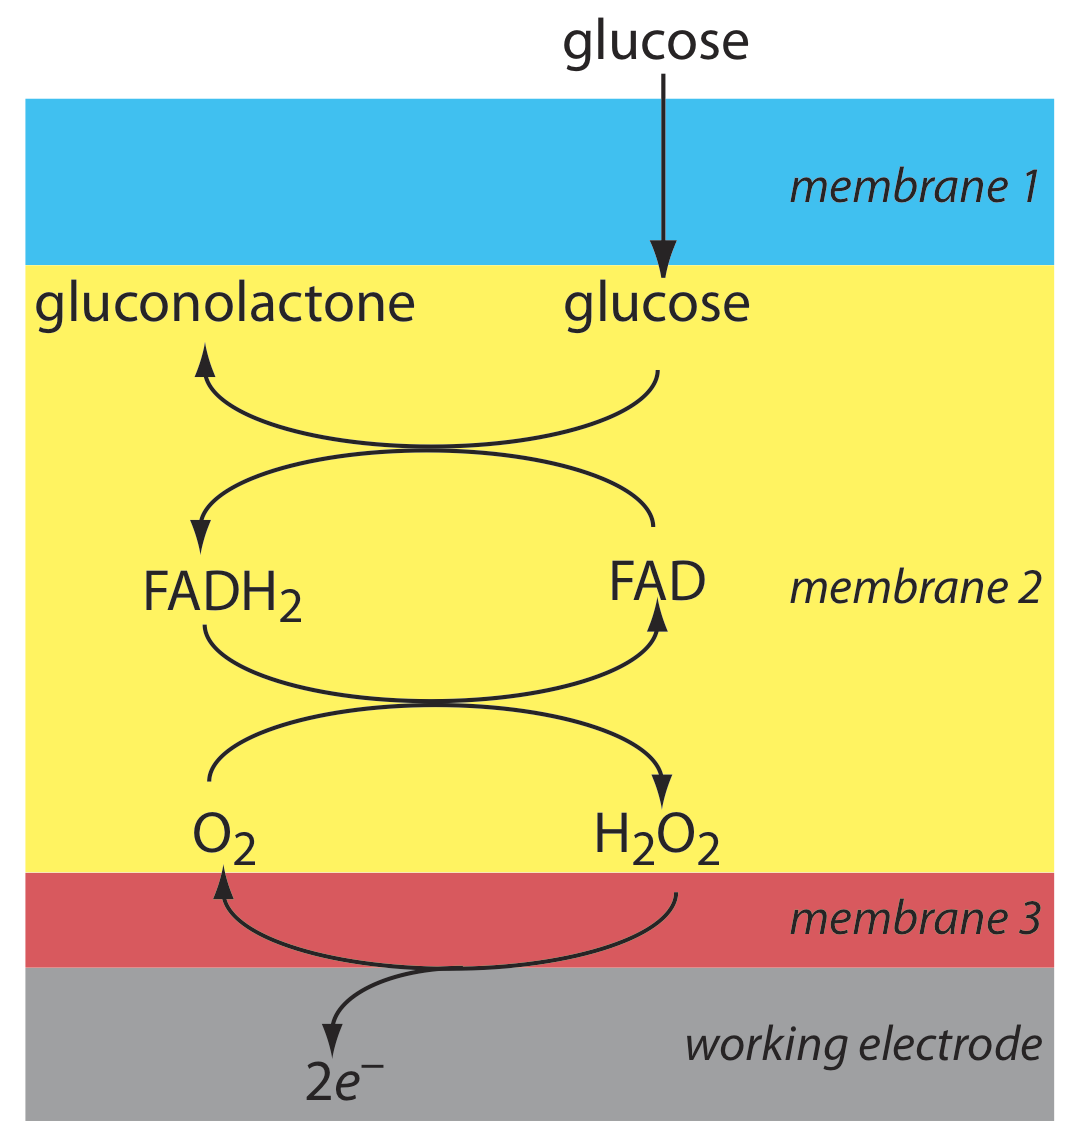 La glucosa pasa a través de la primera membrana donde puede reaccionar con FAD para formar gluconolactona y FADH2. FADH2 puede entonces reaccionar con O2 para reformar FAD y H2O2. El H2O2 puede entonces salir de la membrana 2 y pasar a través de la membrana 3 y liberar dos electrones.